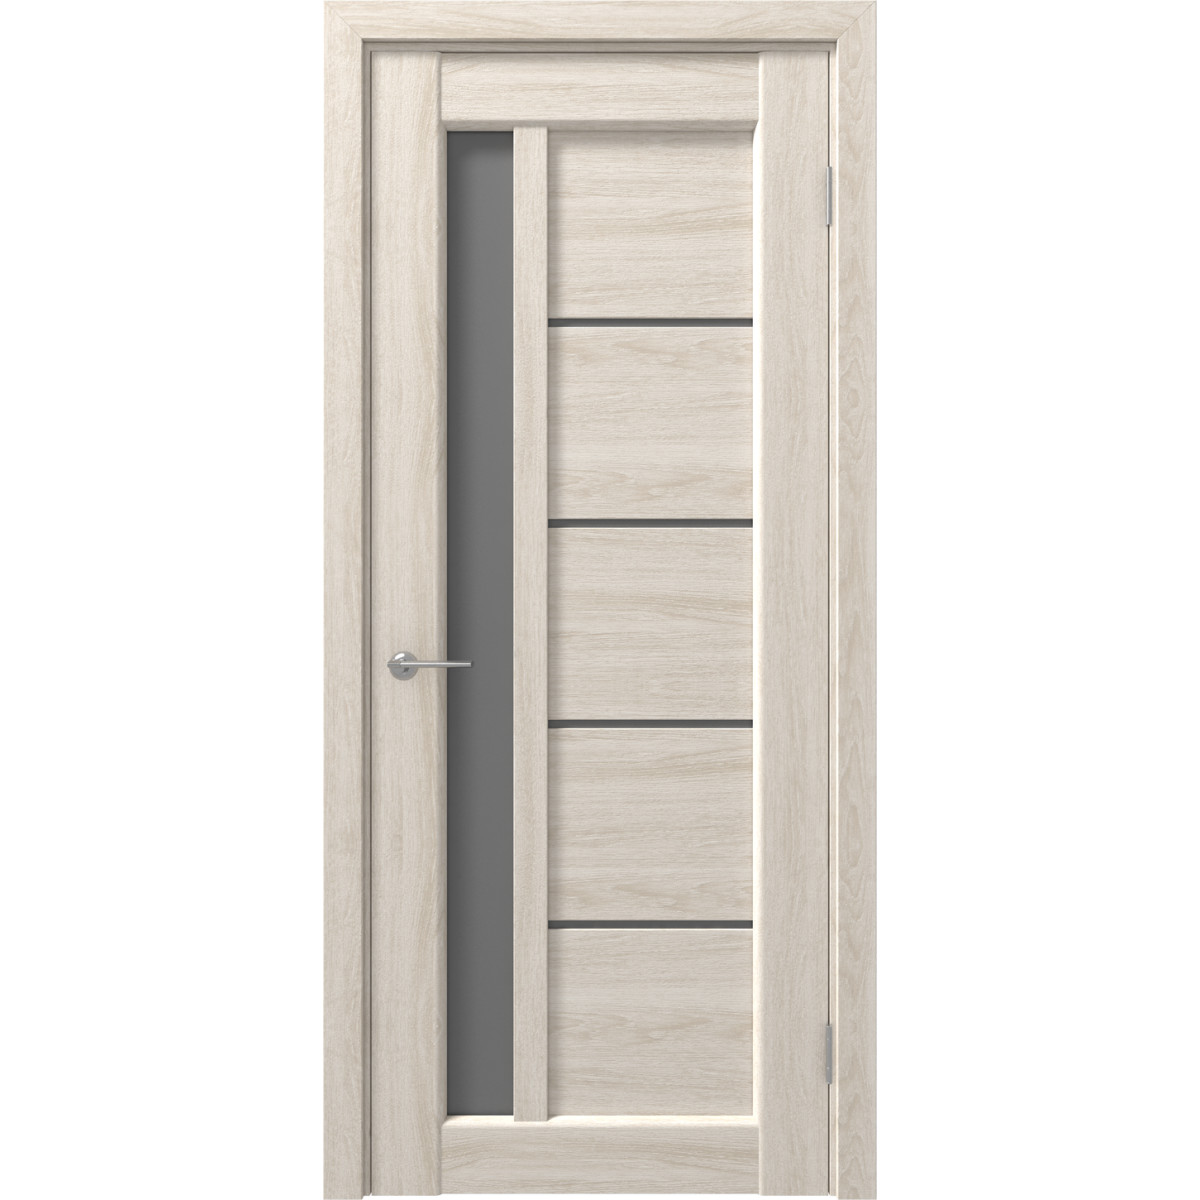 Дверь межкомнатная остеклённая с замком и петлями в комплекте Artens Брио 80x200 см ПВХ цвет дуб филадельфия